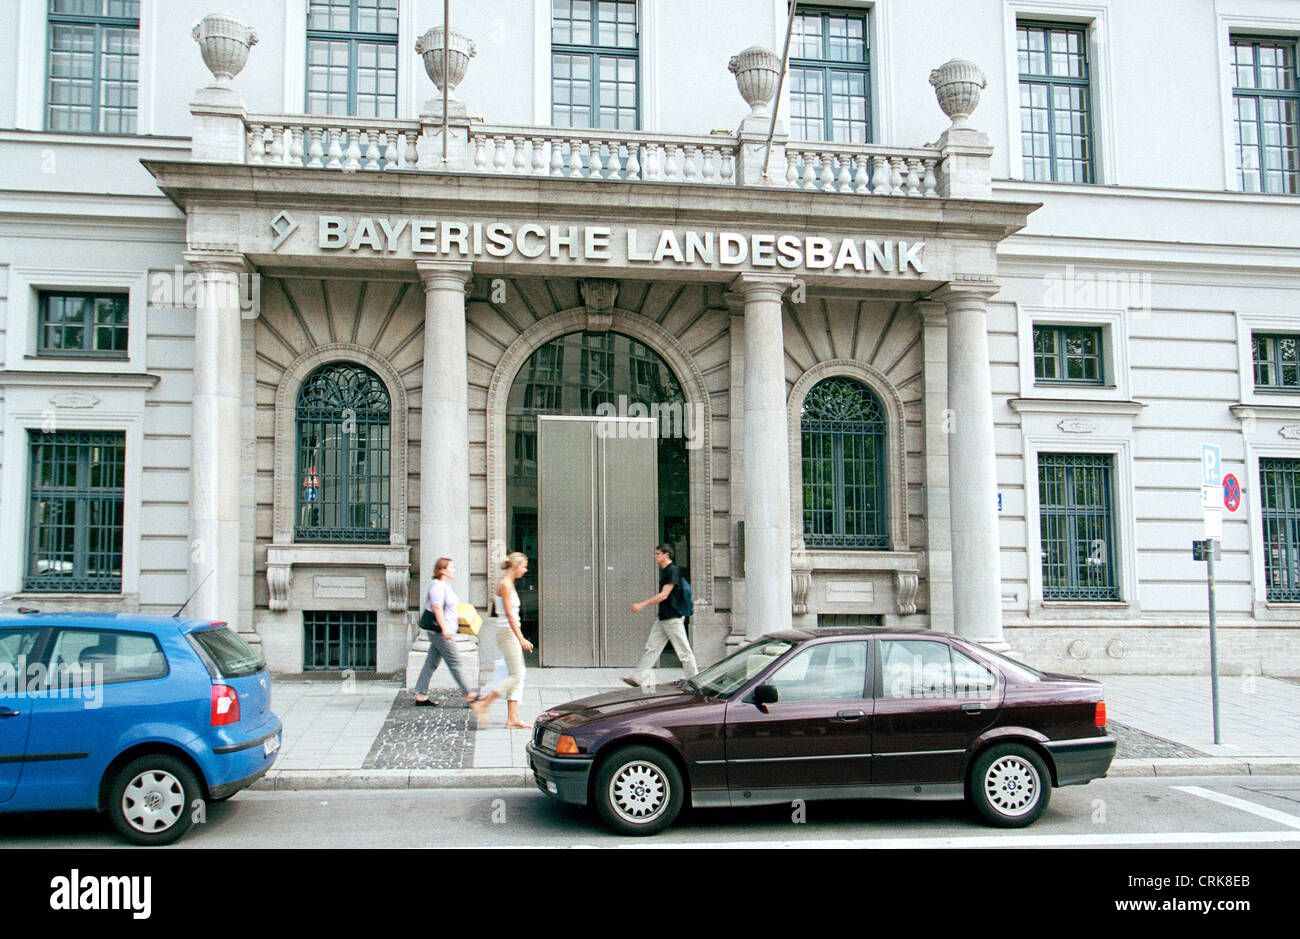 Central Bayerische Landesbank in Munich Stock Photo